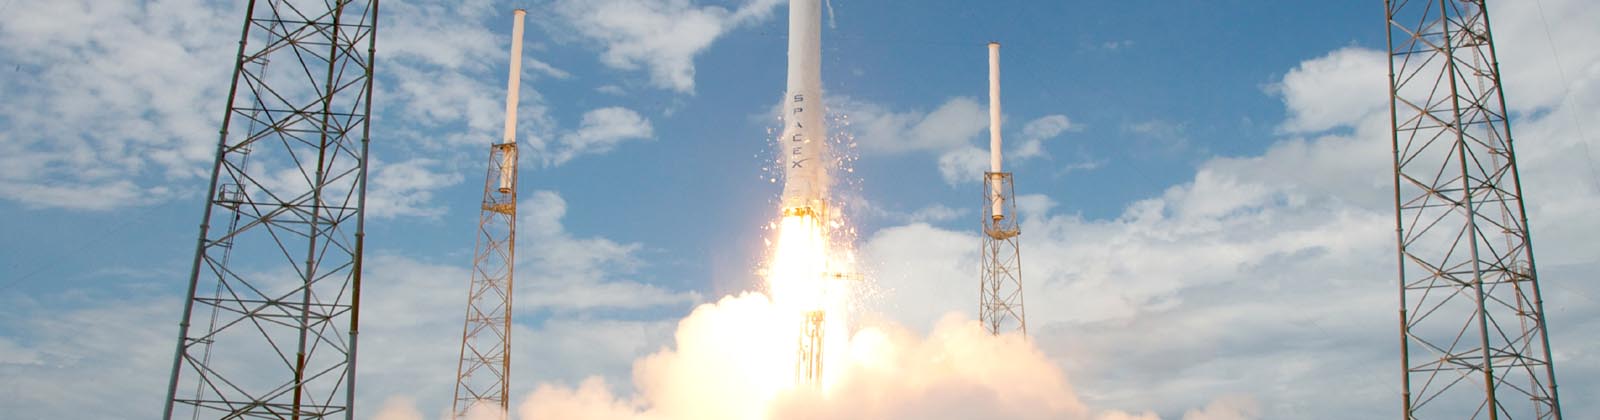 Premier lancement Falcon 9